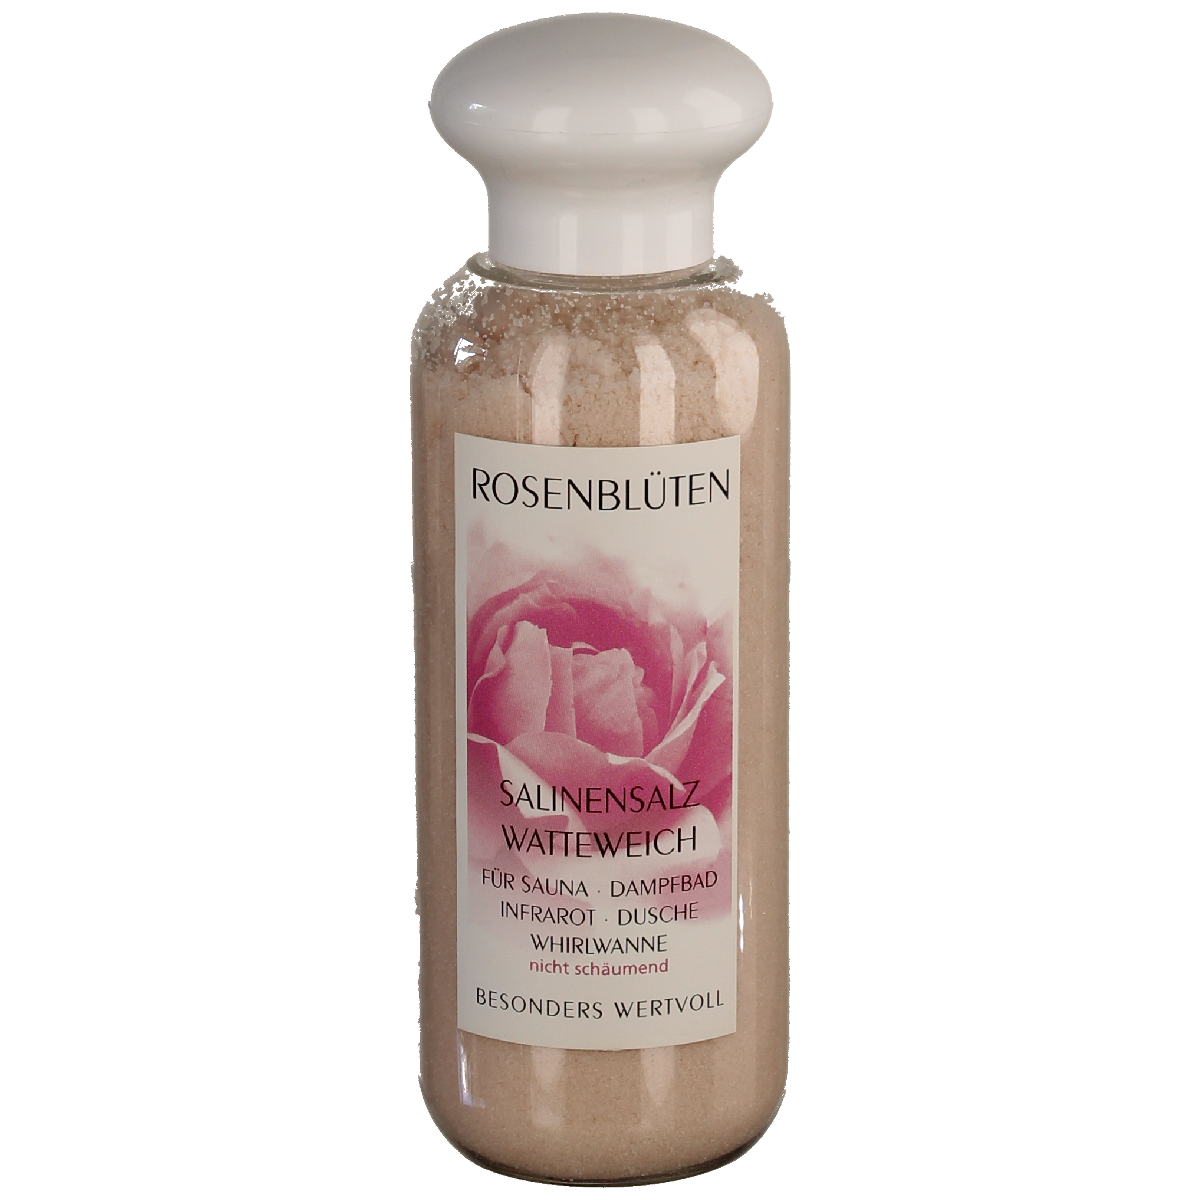 Rosenblüten Salinensalz - watteweich 300 g Flasche